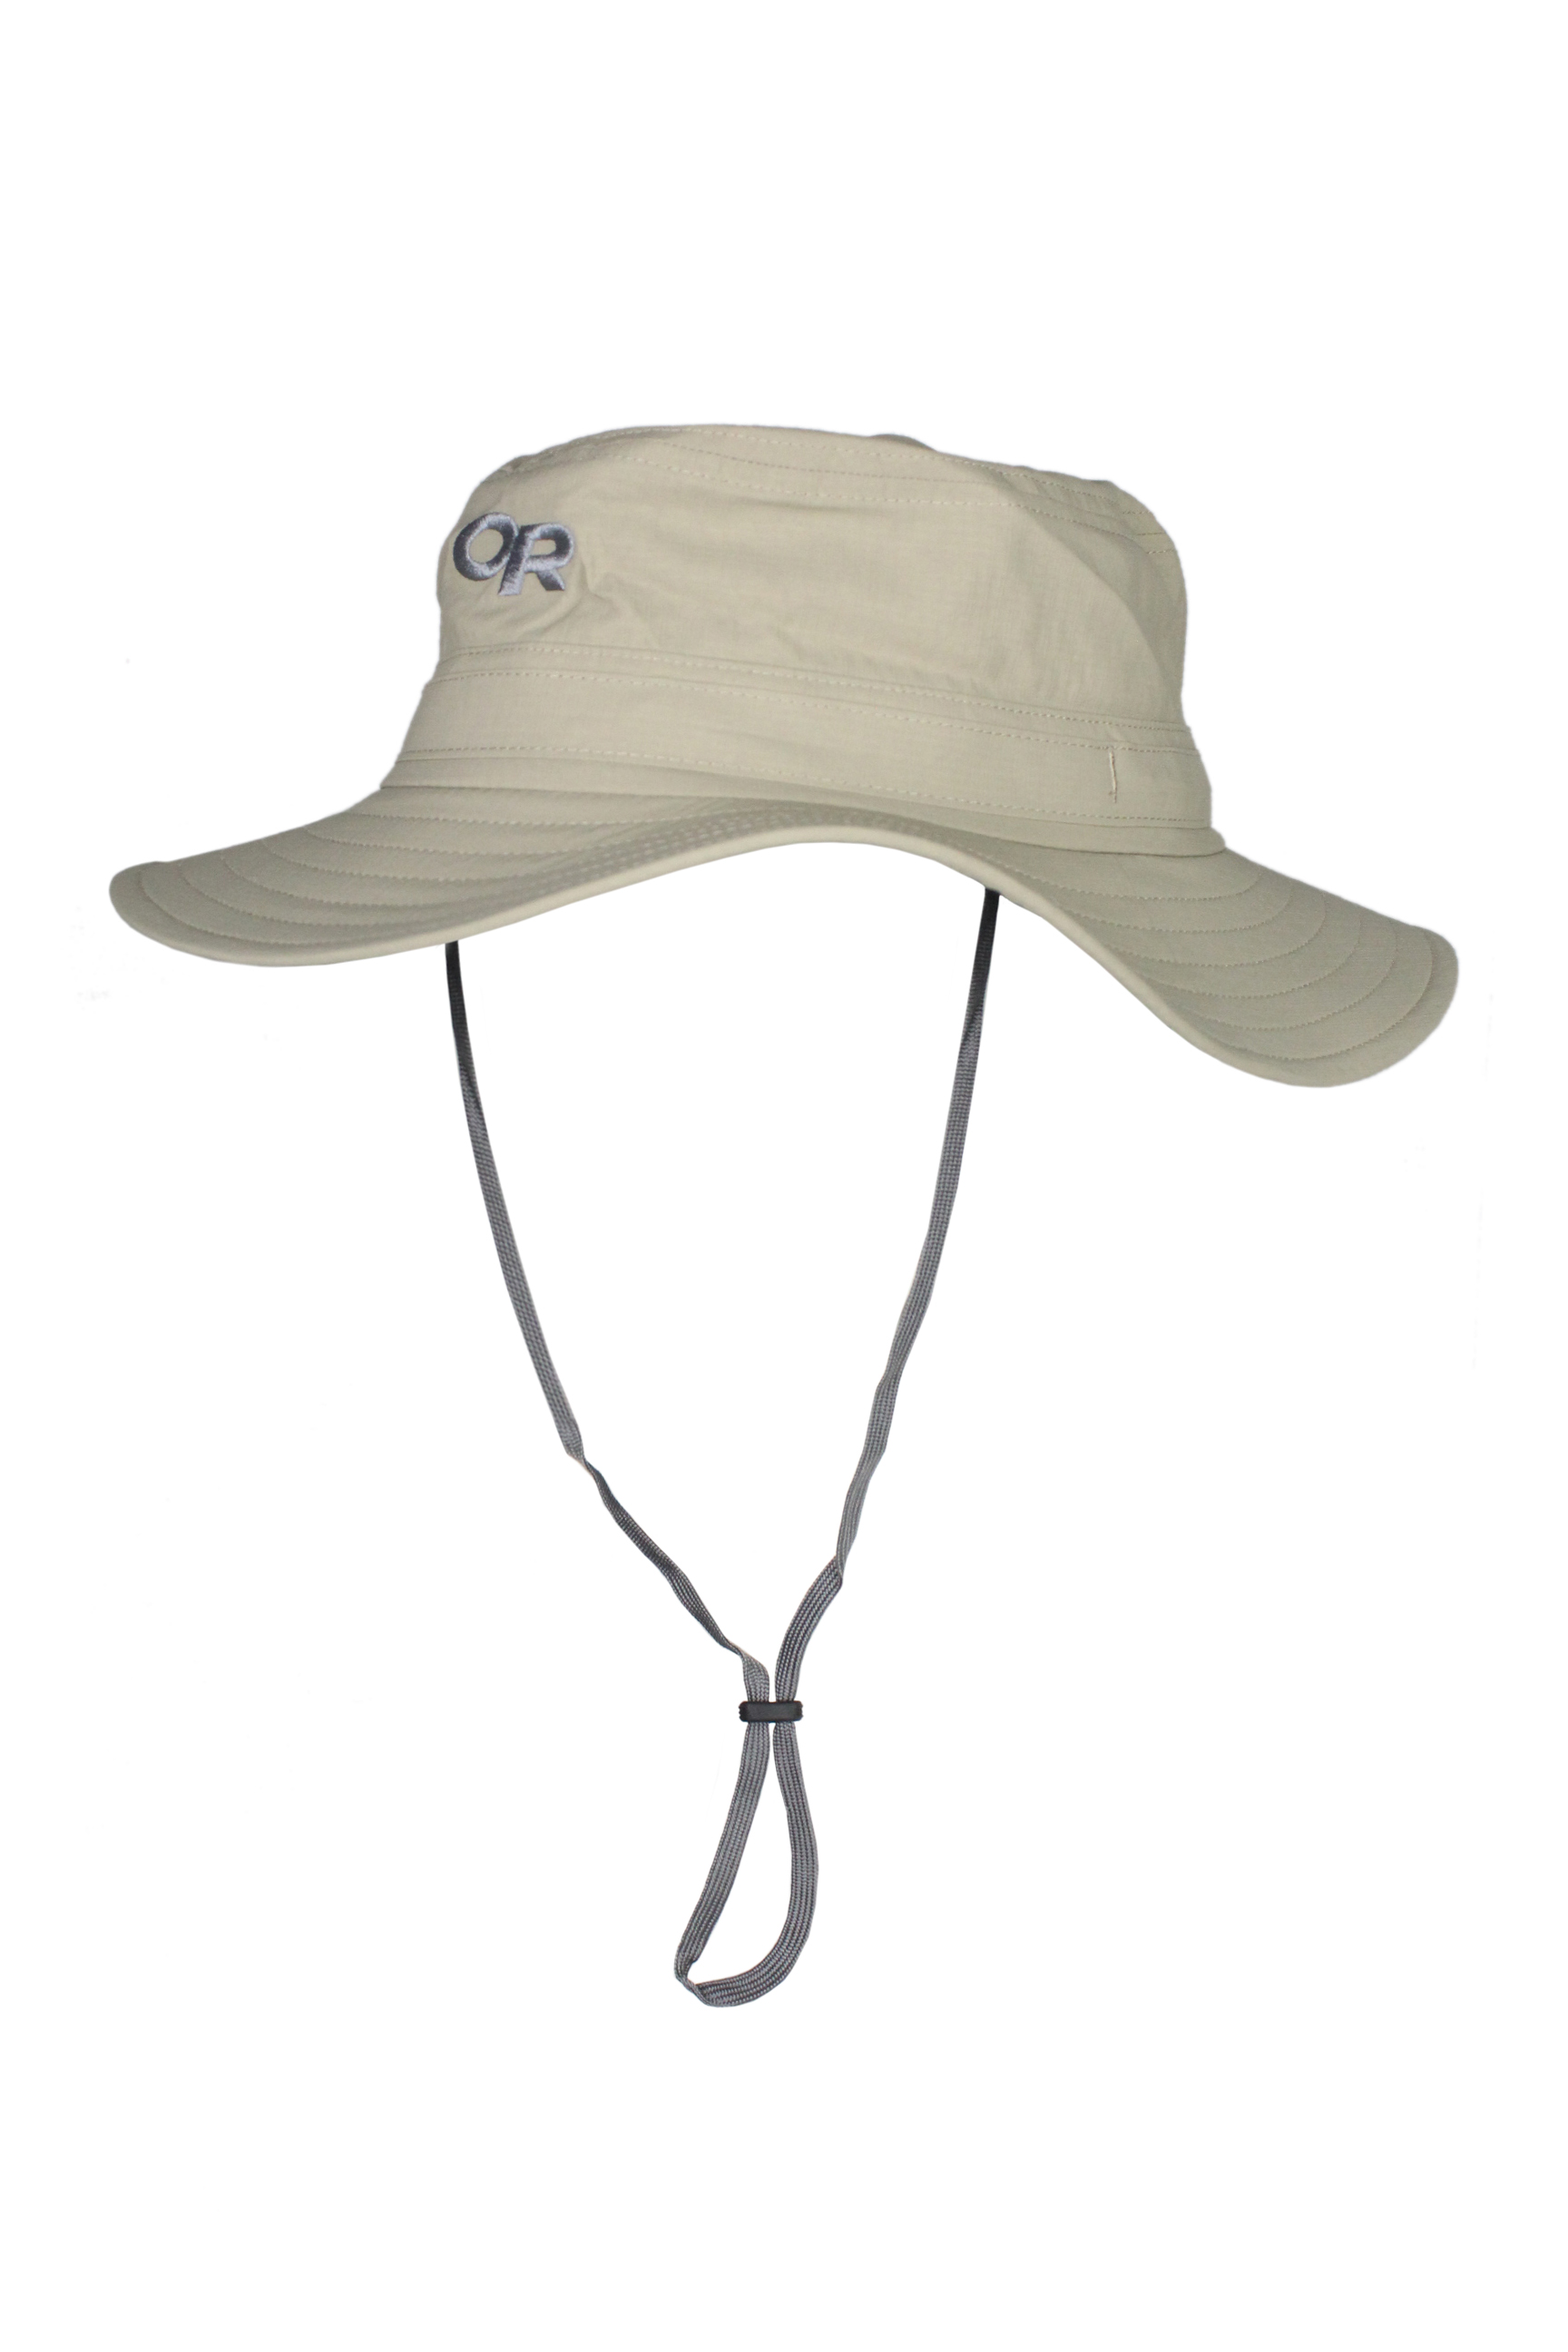 Шляпа OR Helios Sun Hat khaki